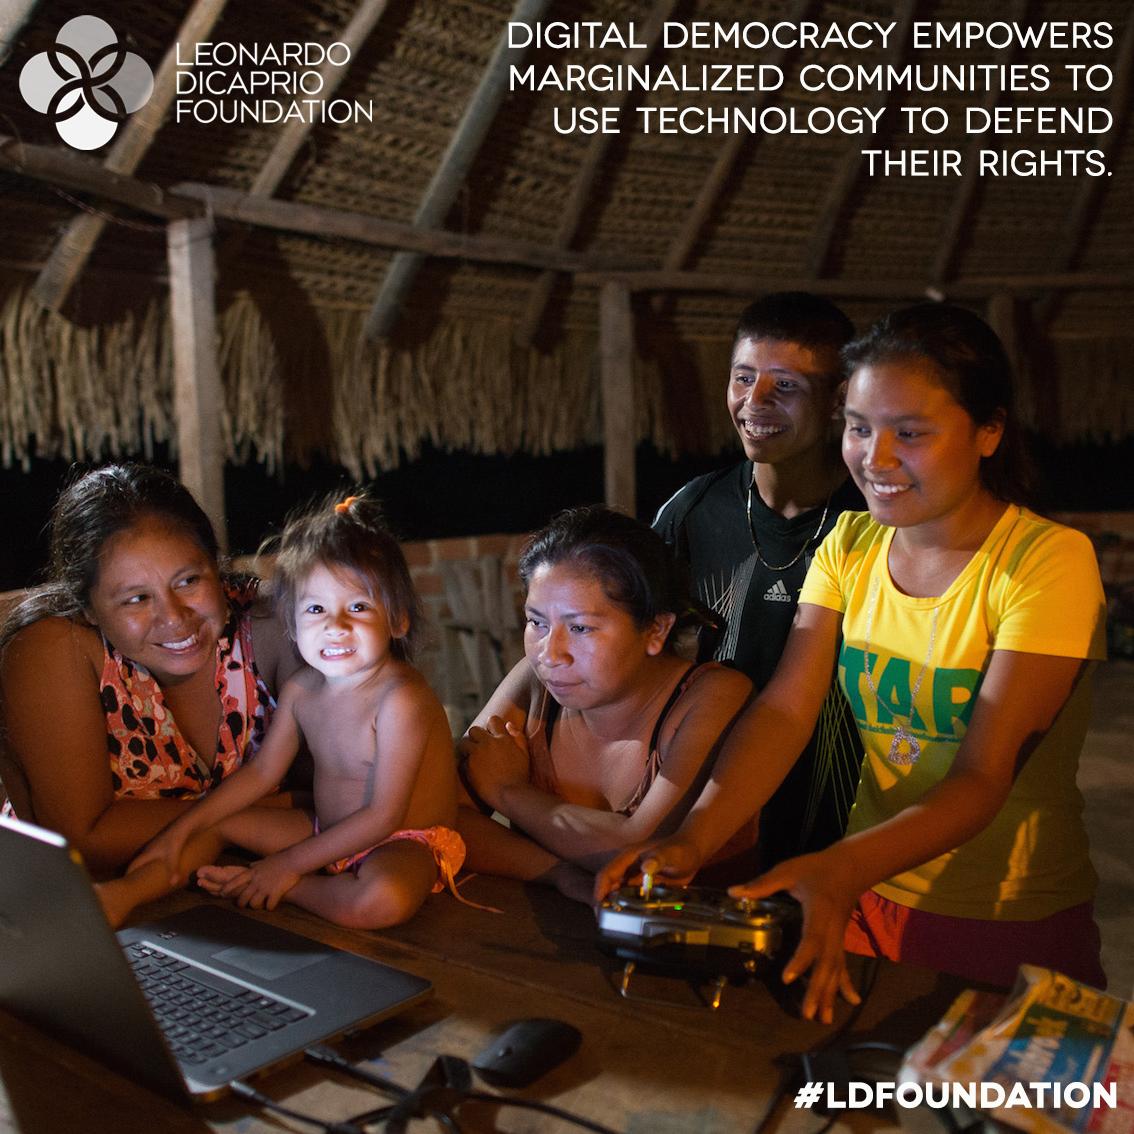 #LDFoundation partner: @DigiDem (Photo Credit: Gregor MacLennan, Digital Democracy, 2015) http://t.co/C7WnQlTvM2